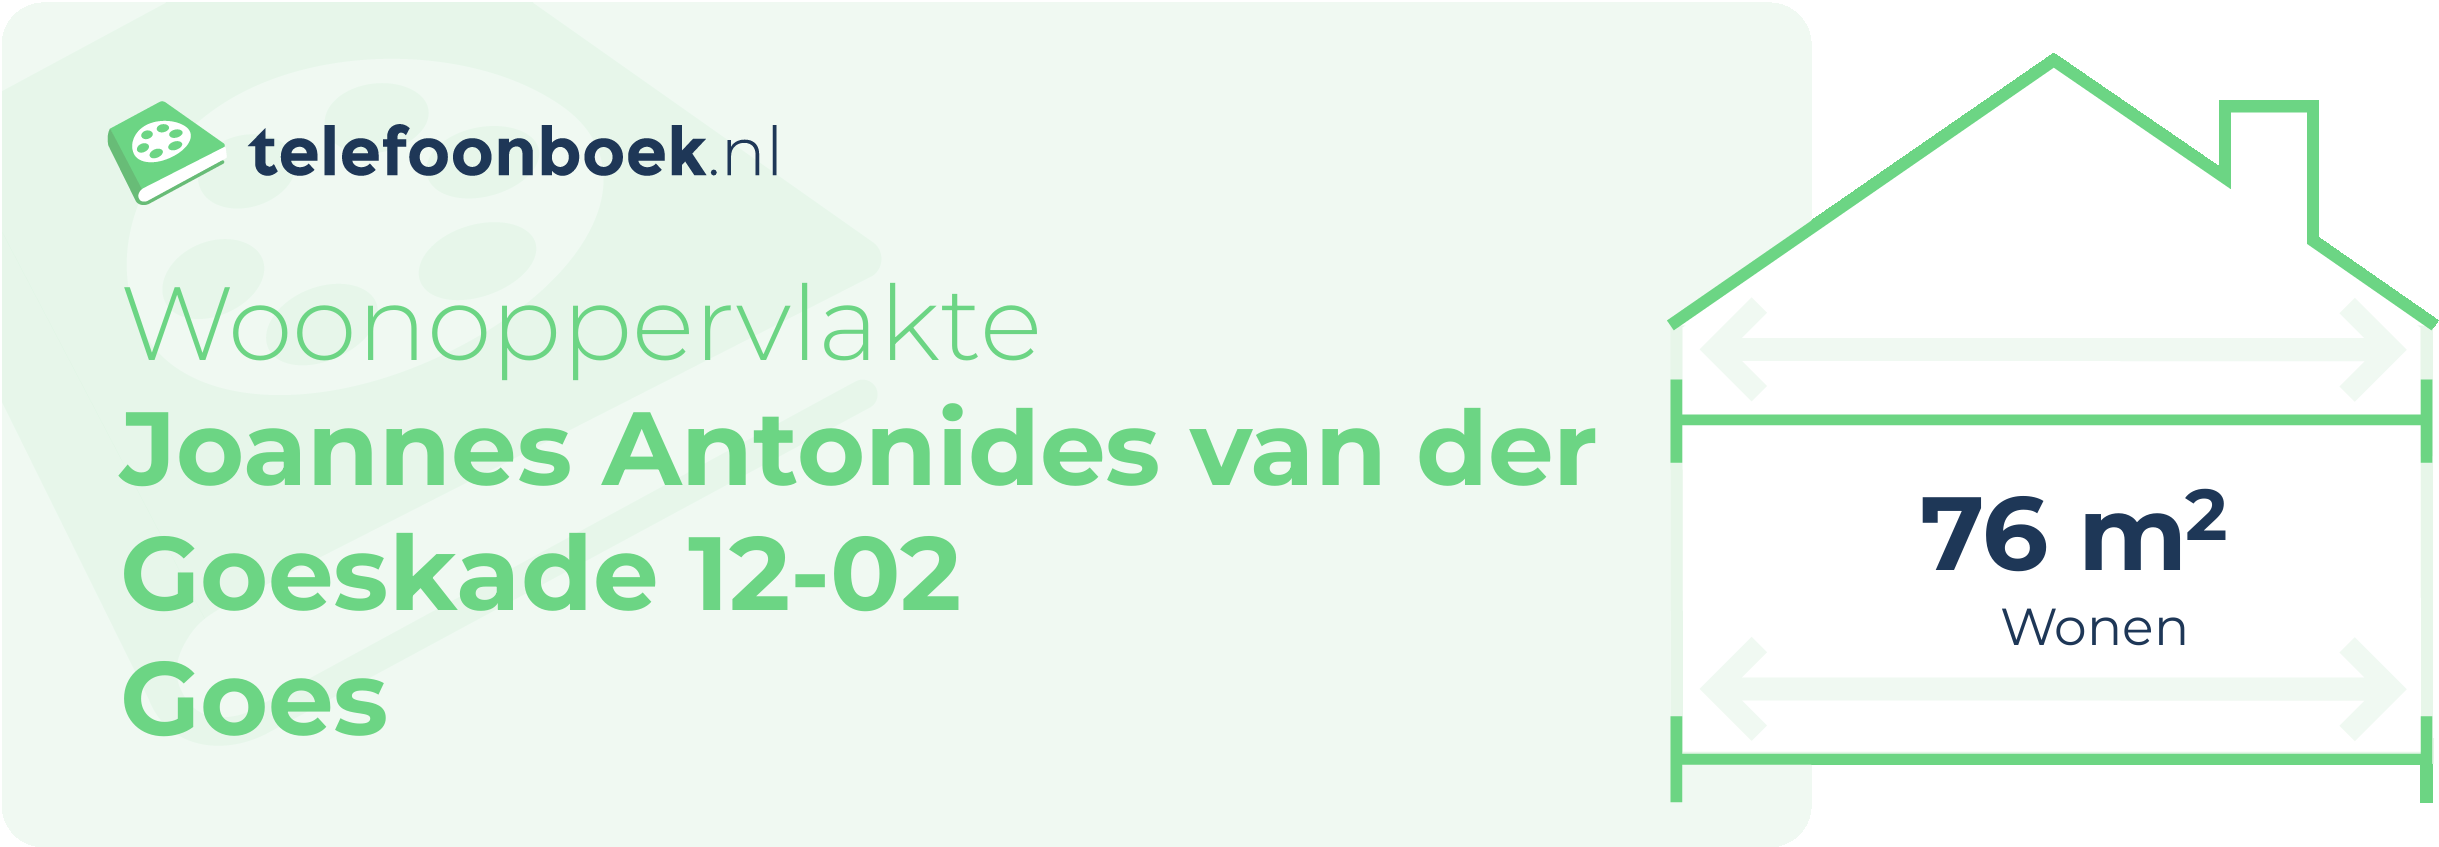 Woonoppervlakte Joannes Antonides Van Der Goeskade 12-02 Goes